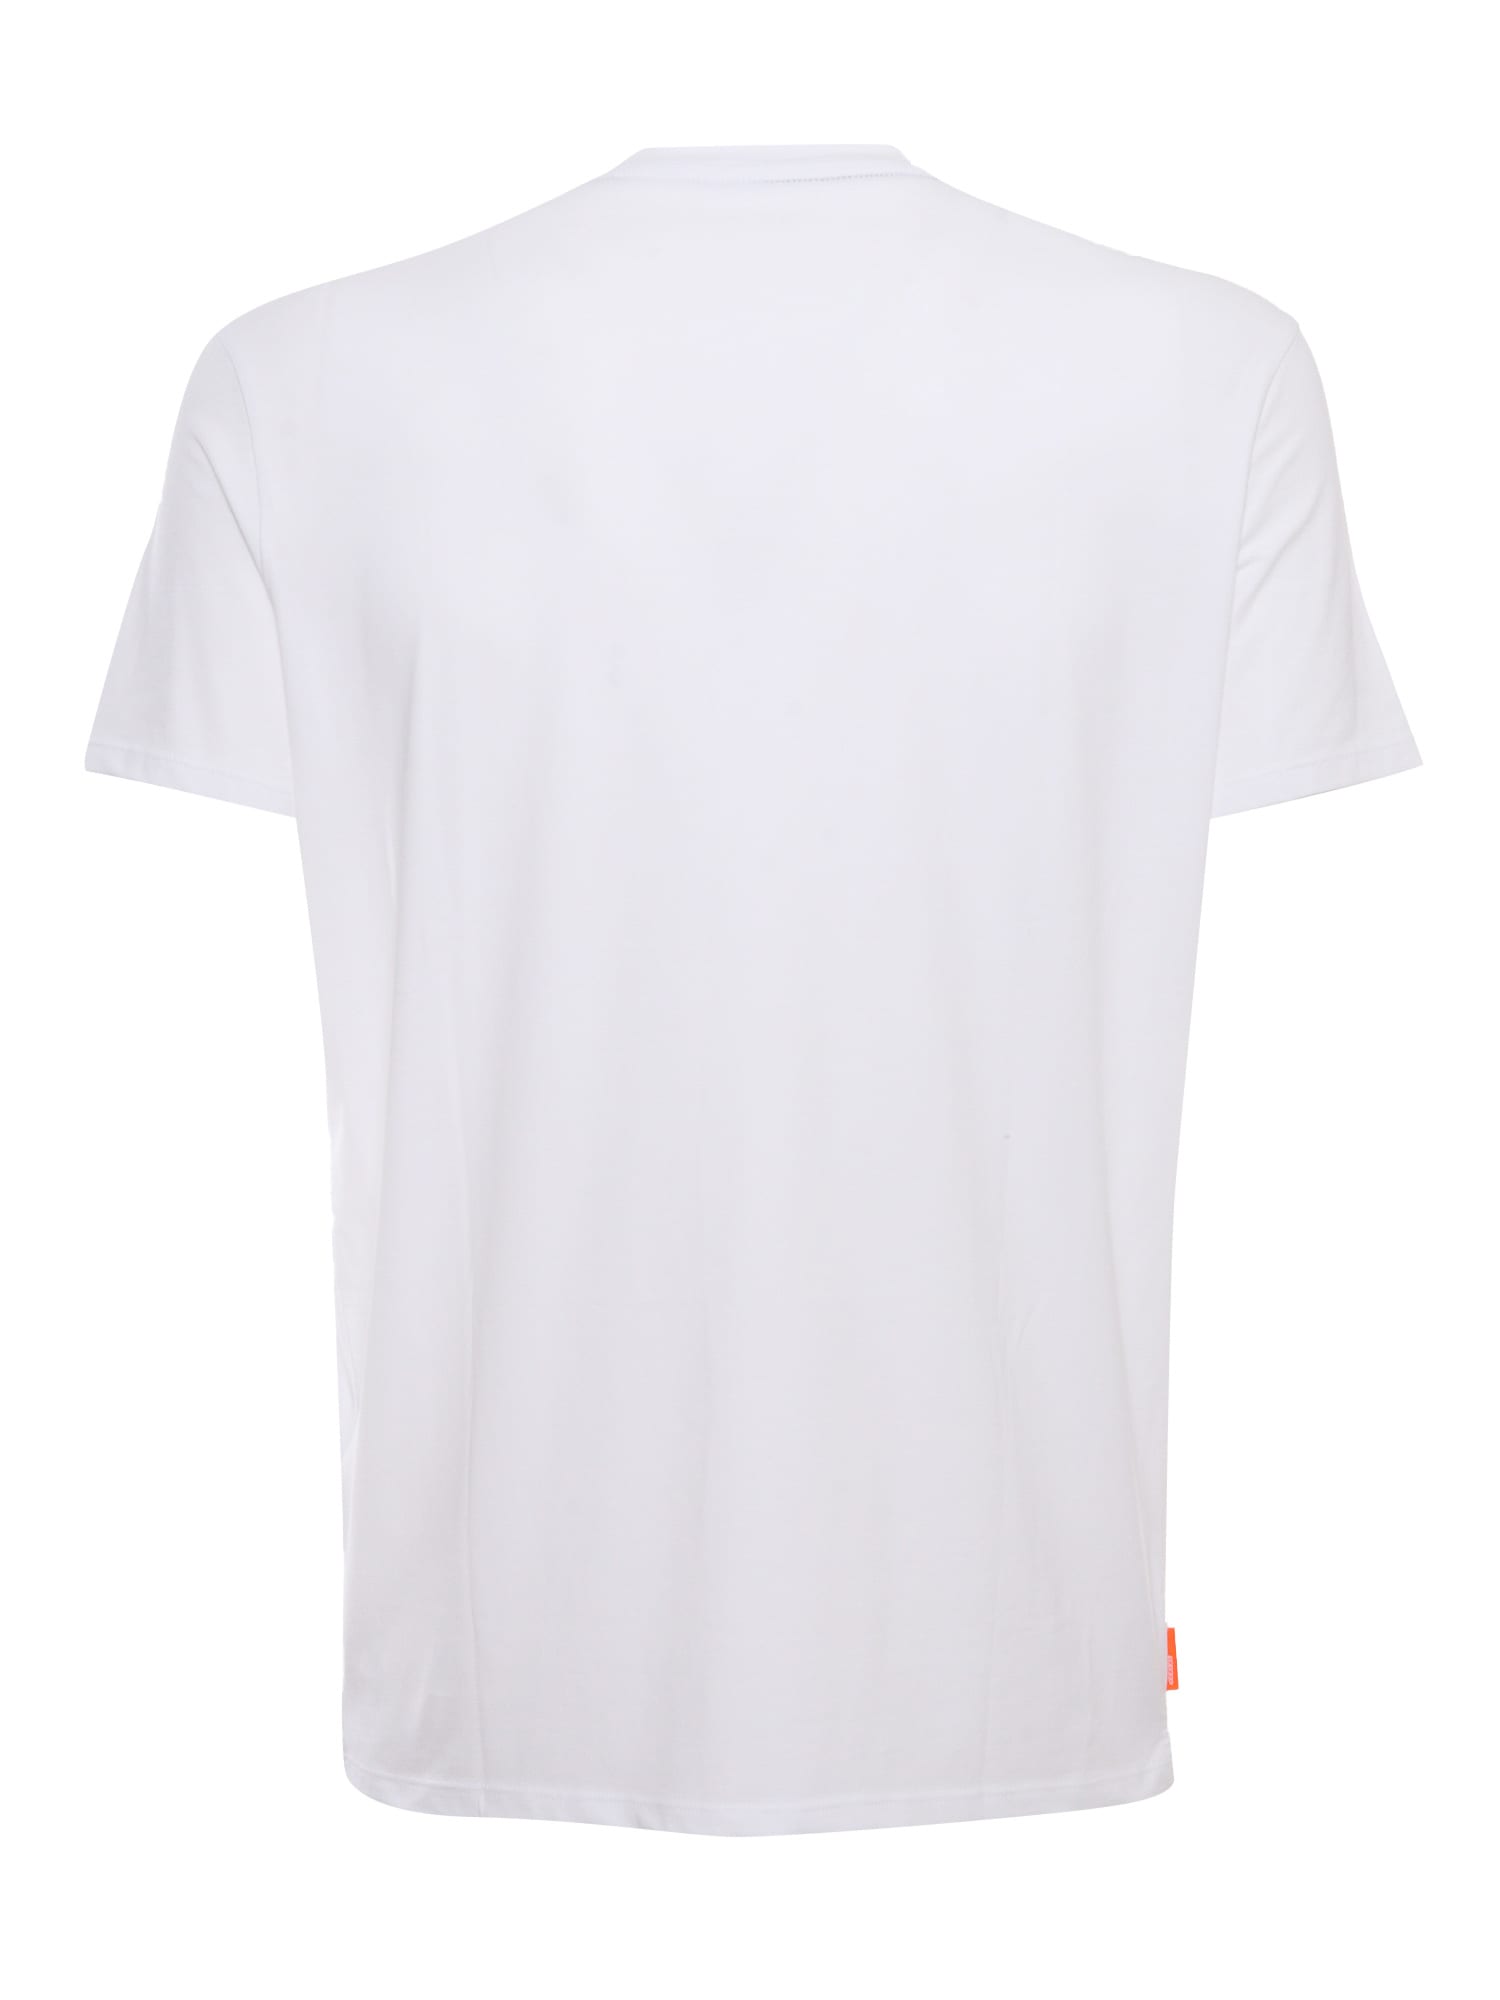 Shop Rrd - Roberto Ricci Design Revo White T-shirt